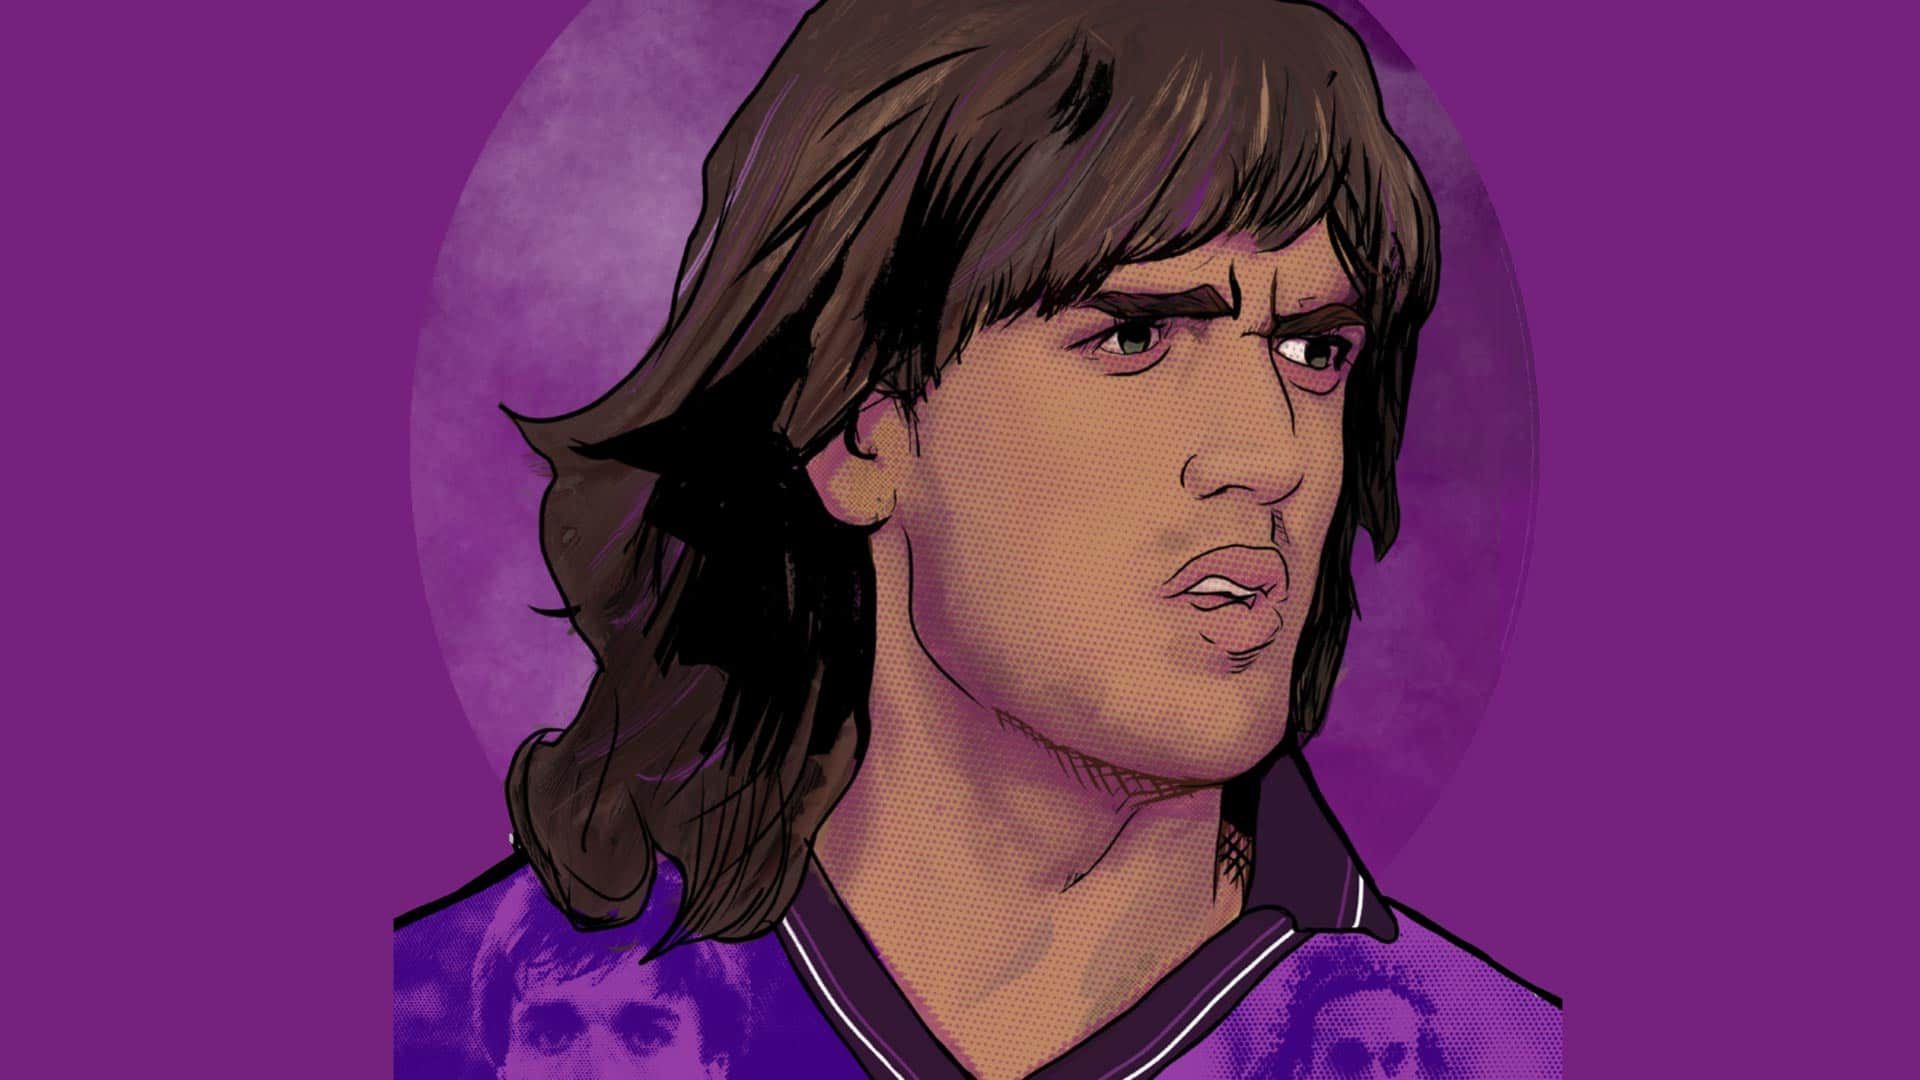 A very purple drawing of Gabriel Batistuta, looking great